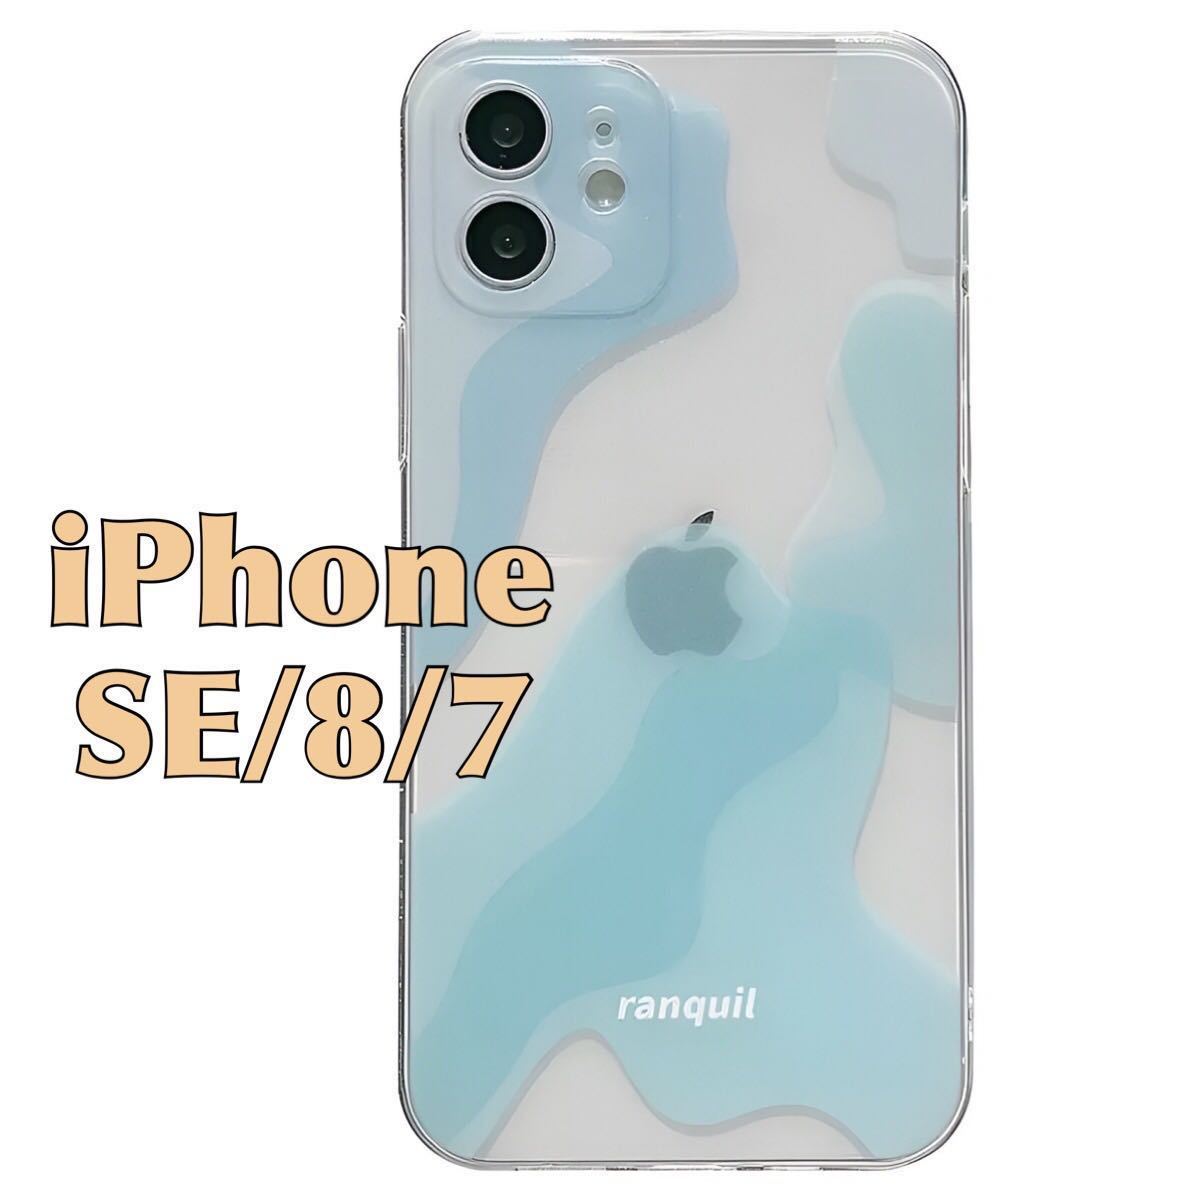 iPhone SE / 8 / 7 ケース オーシャン アート 透明 クリア ブルー ホワイト 水色 青 白 幾何学模様 スマホ カバー JHCAS